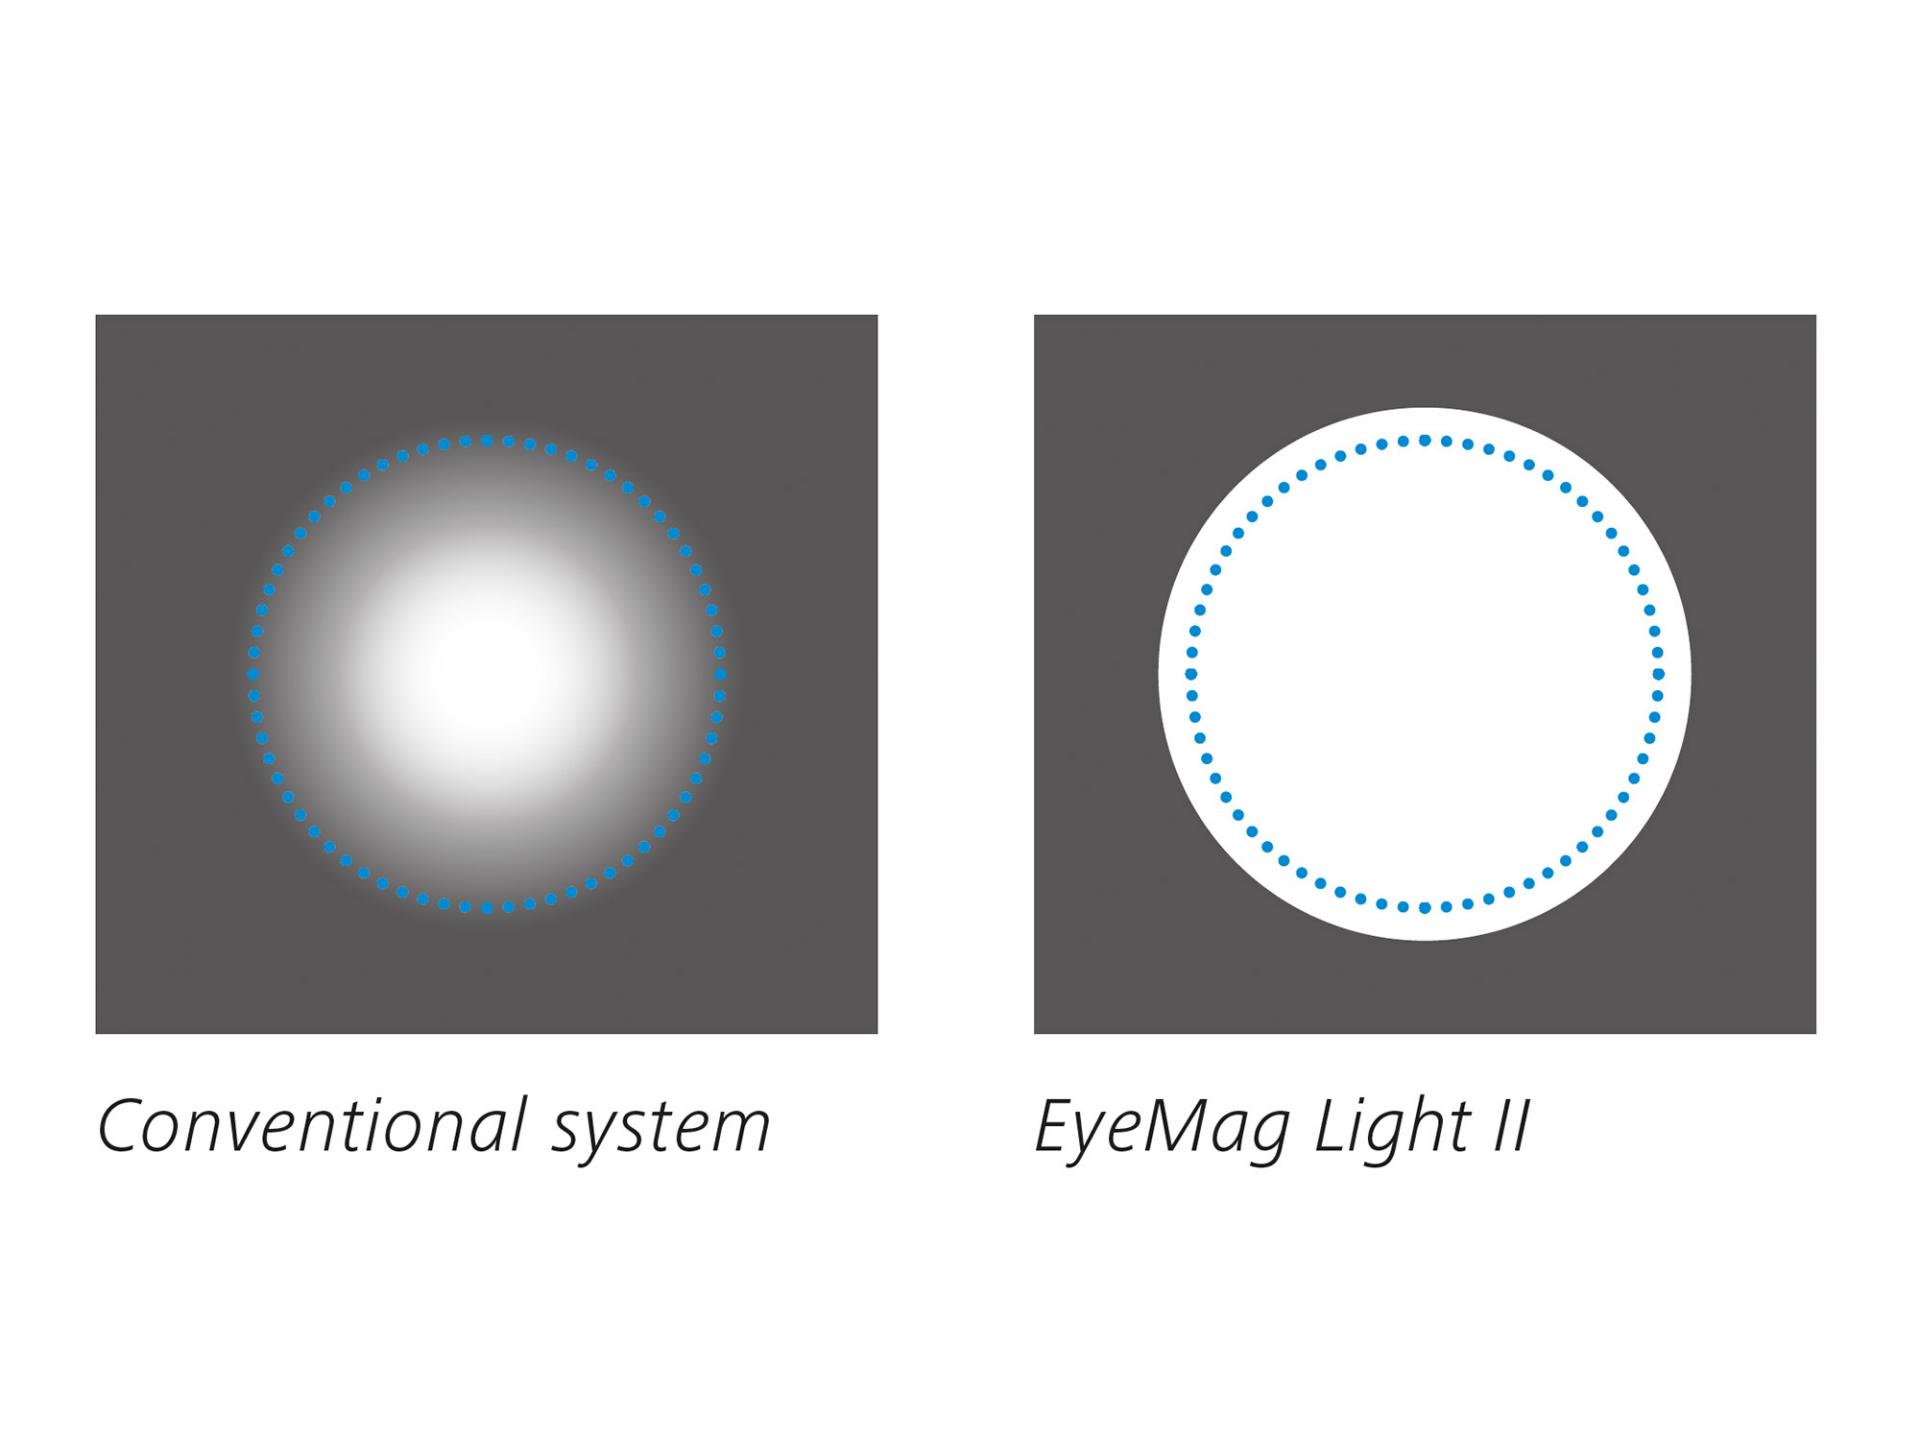 EyeMag Light II for ZEISS medical loupes